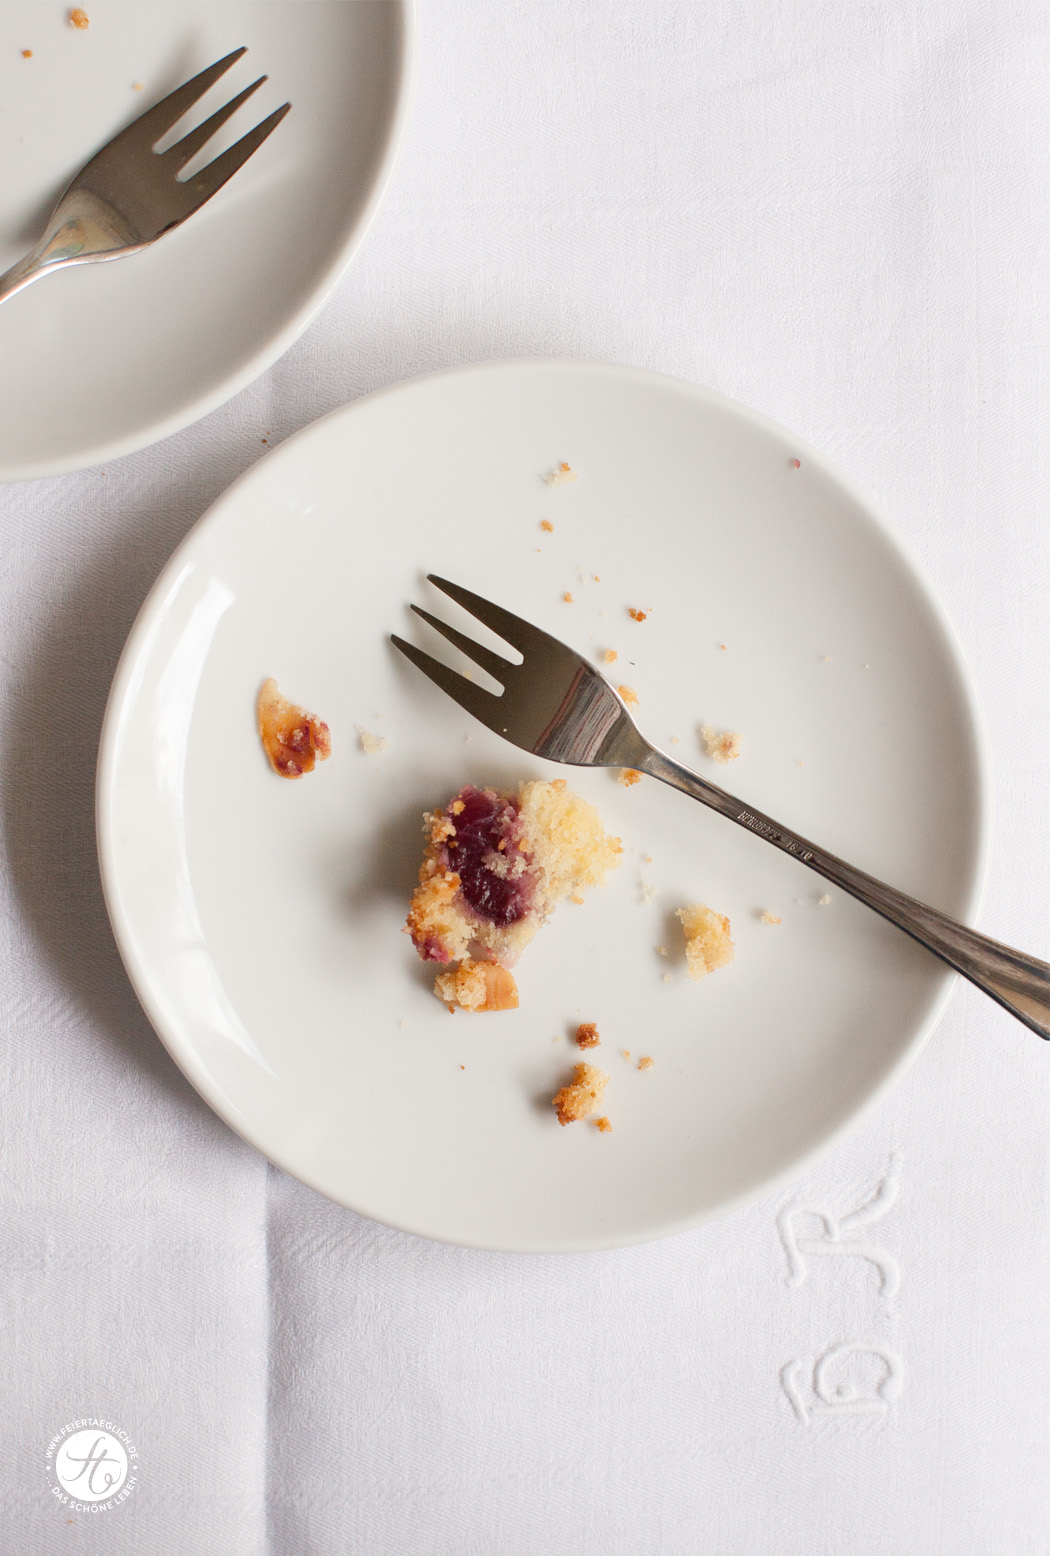 Kirsch-Buttermilch-Kuchen mit knuspriger Mandelkruste | Rezept von feiertaeglich.de #feiertaeglich #kirschen #ichbacksmir